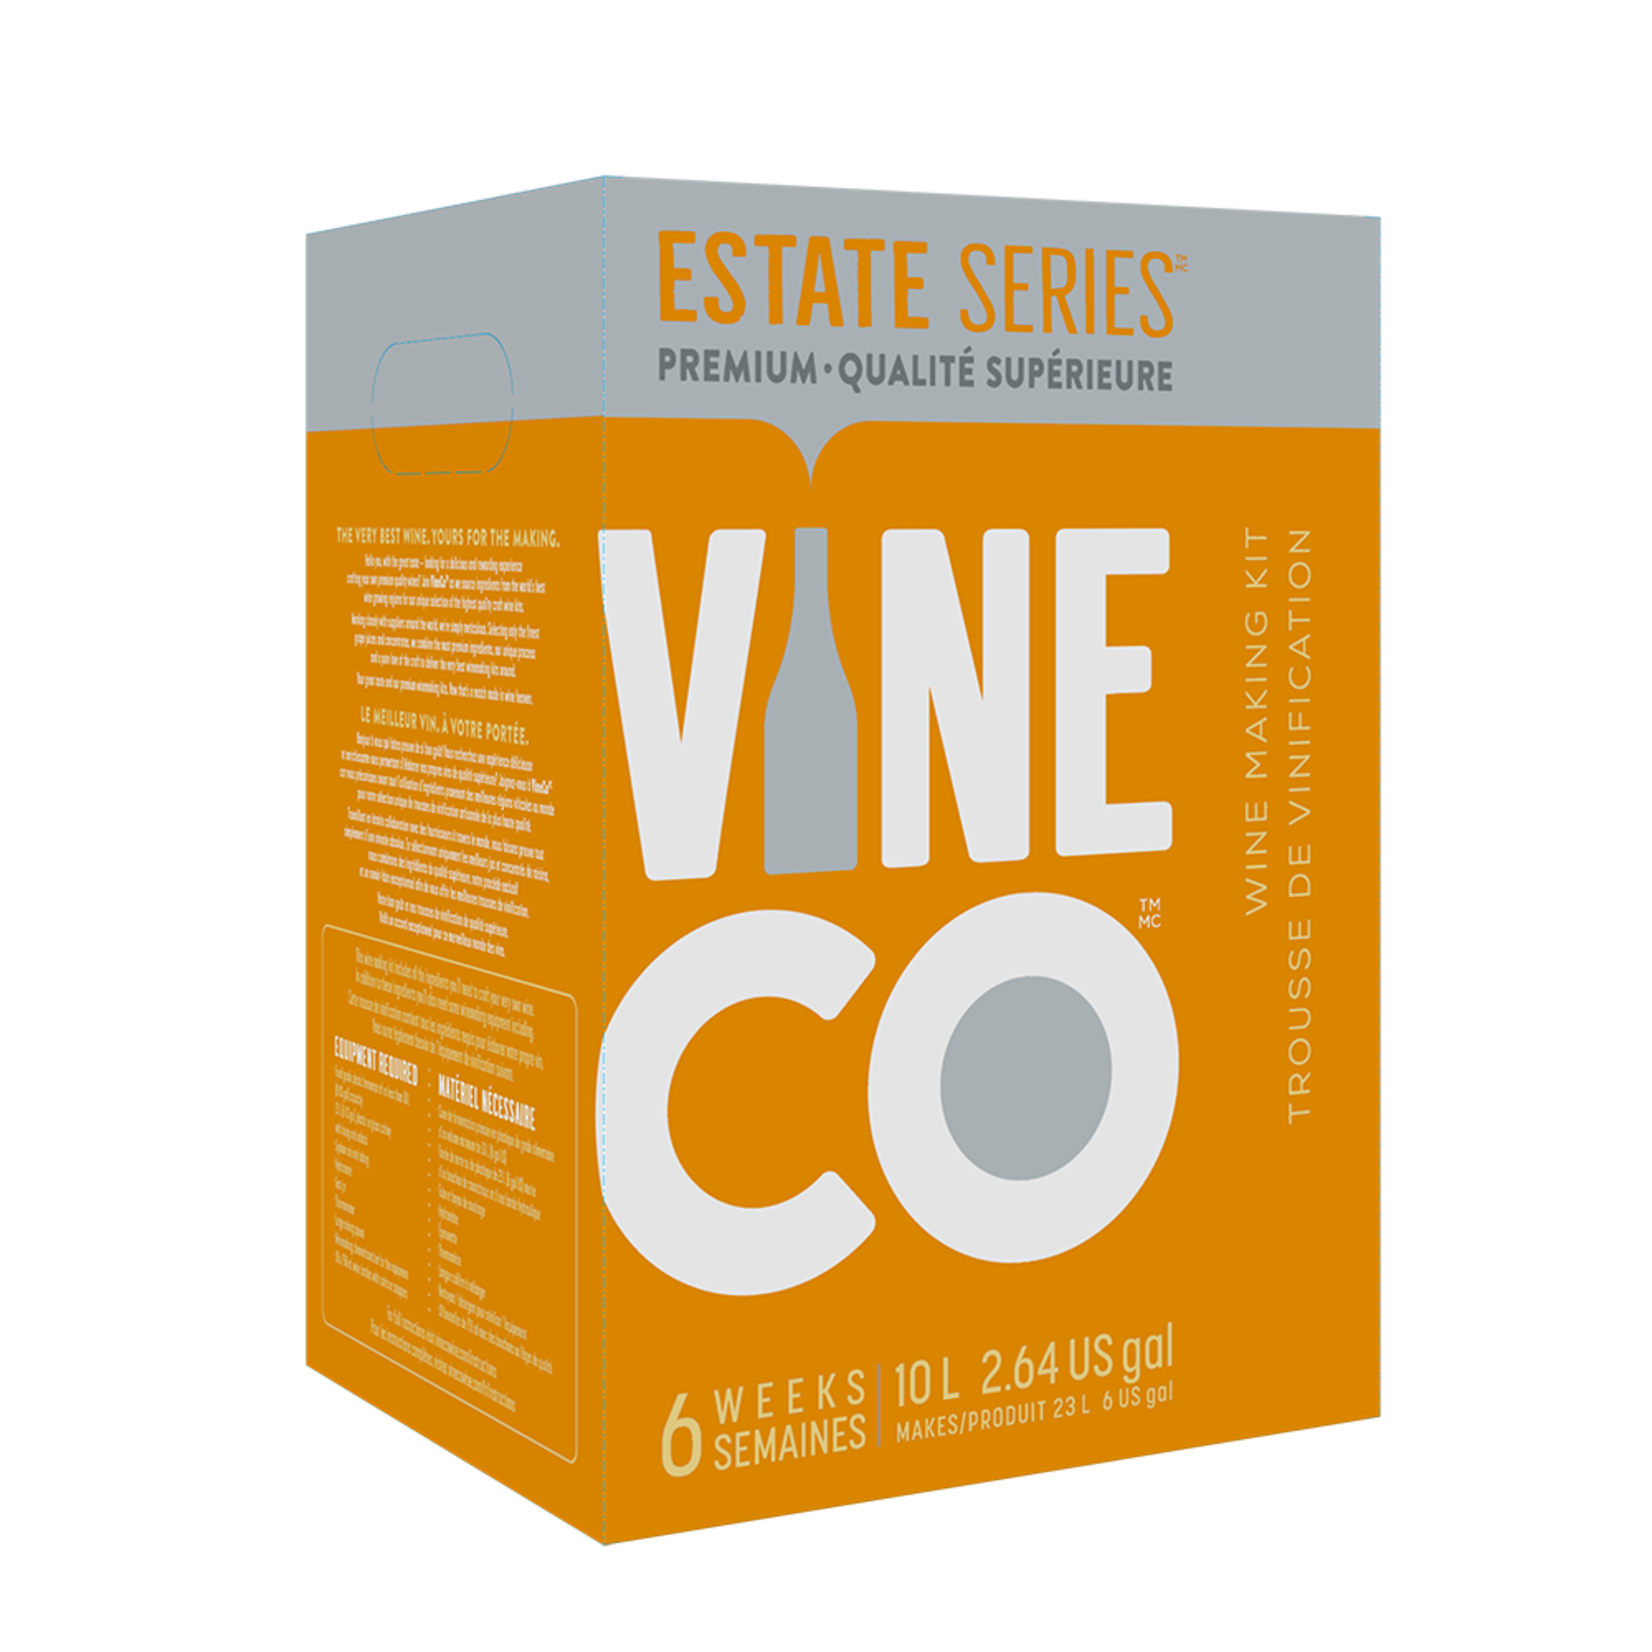 Vine Co. Estate Series Amarone, Italy